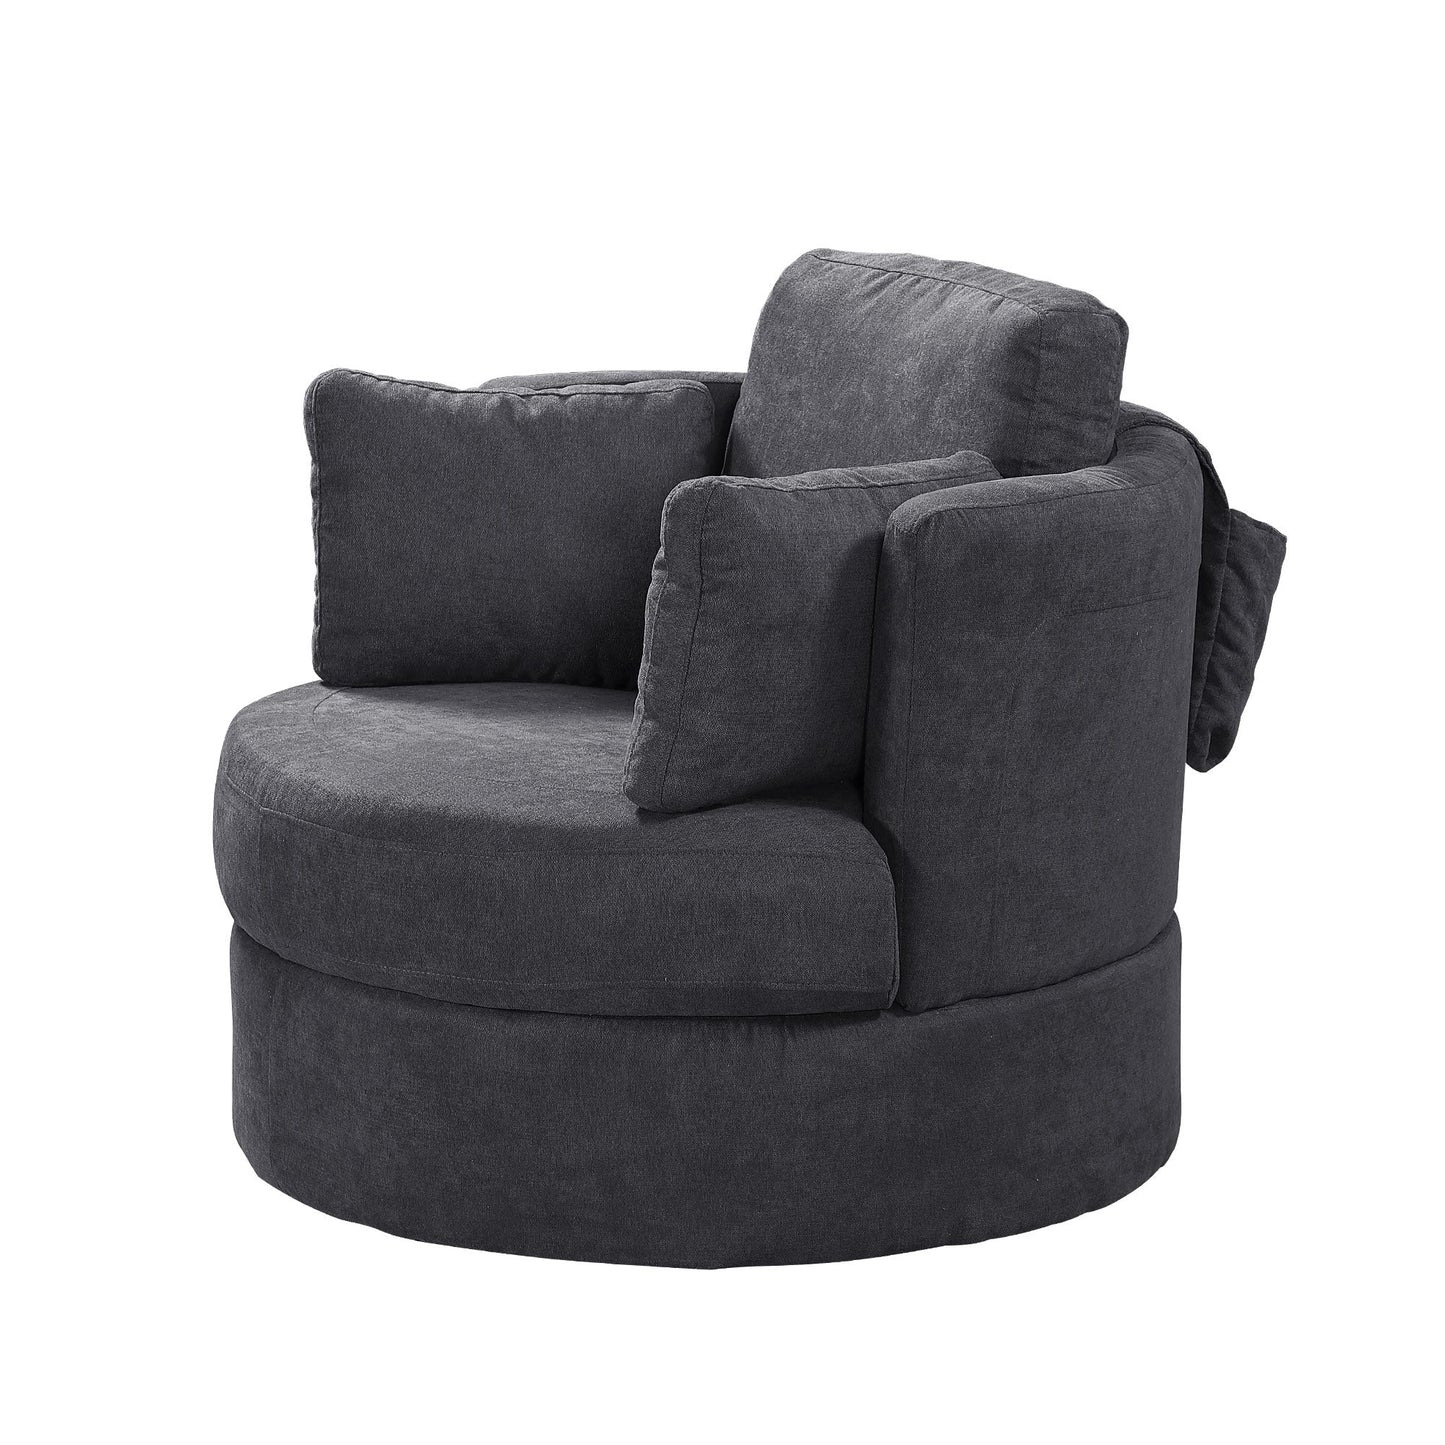 Dark Grey Swivel Accent Barrel Modern Round Chair with 3 Pillows and storage - Demine Essentials